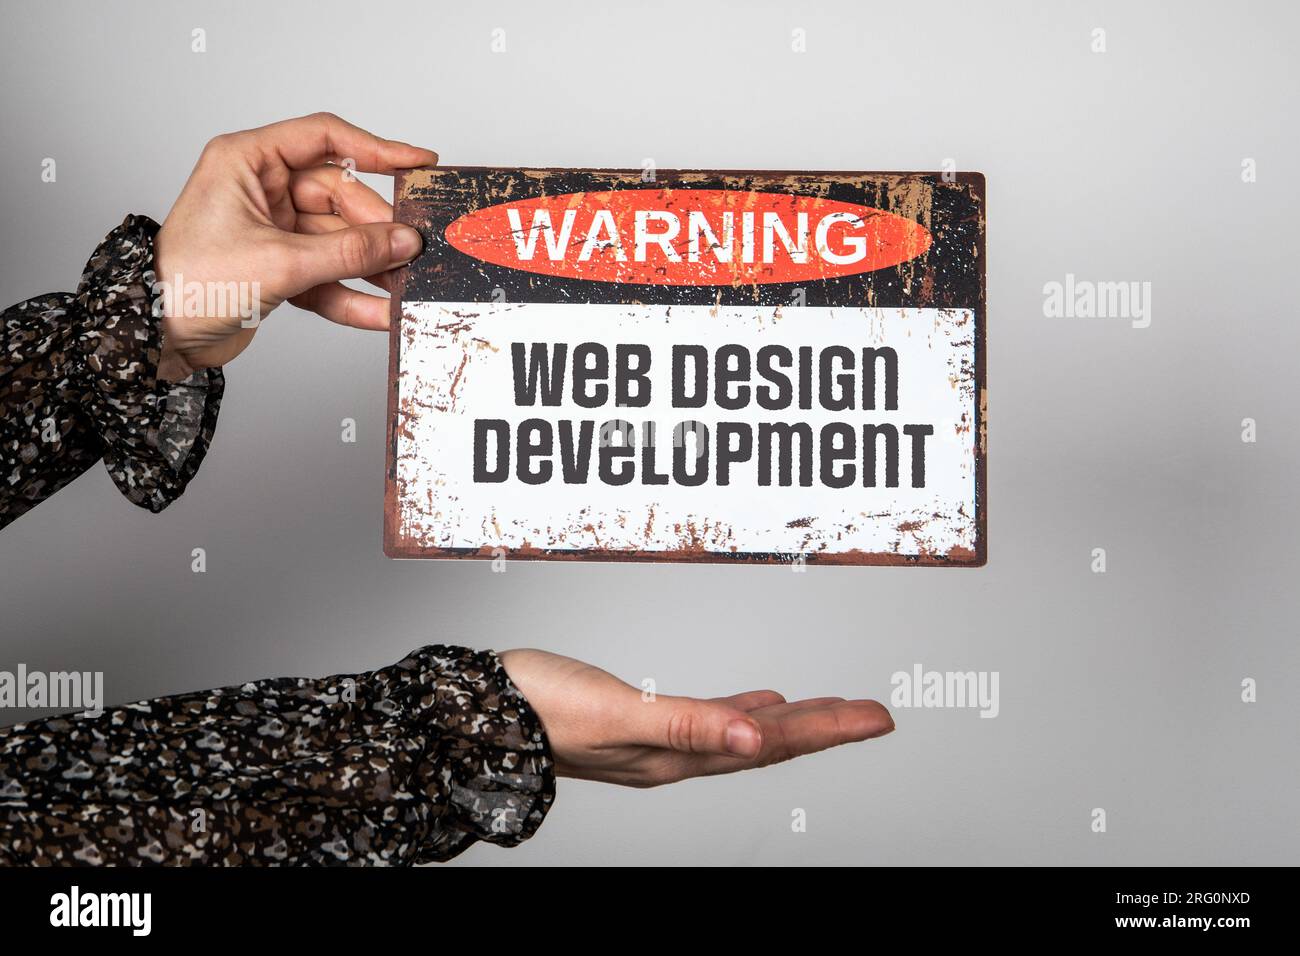 Entwicklungskonzept Für Web-Design. Warnschild mit Text in Frauenhänden. Stockfoto